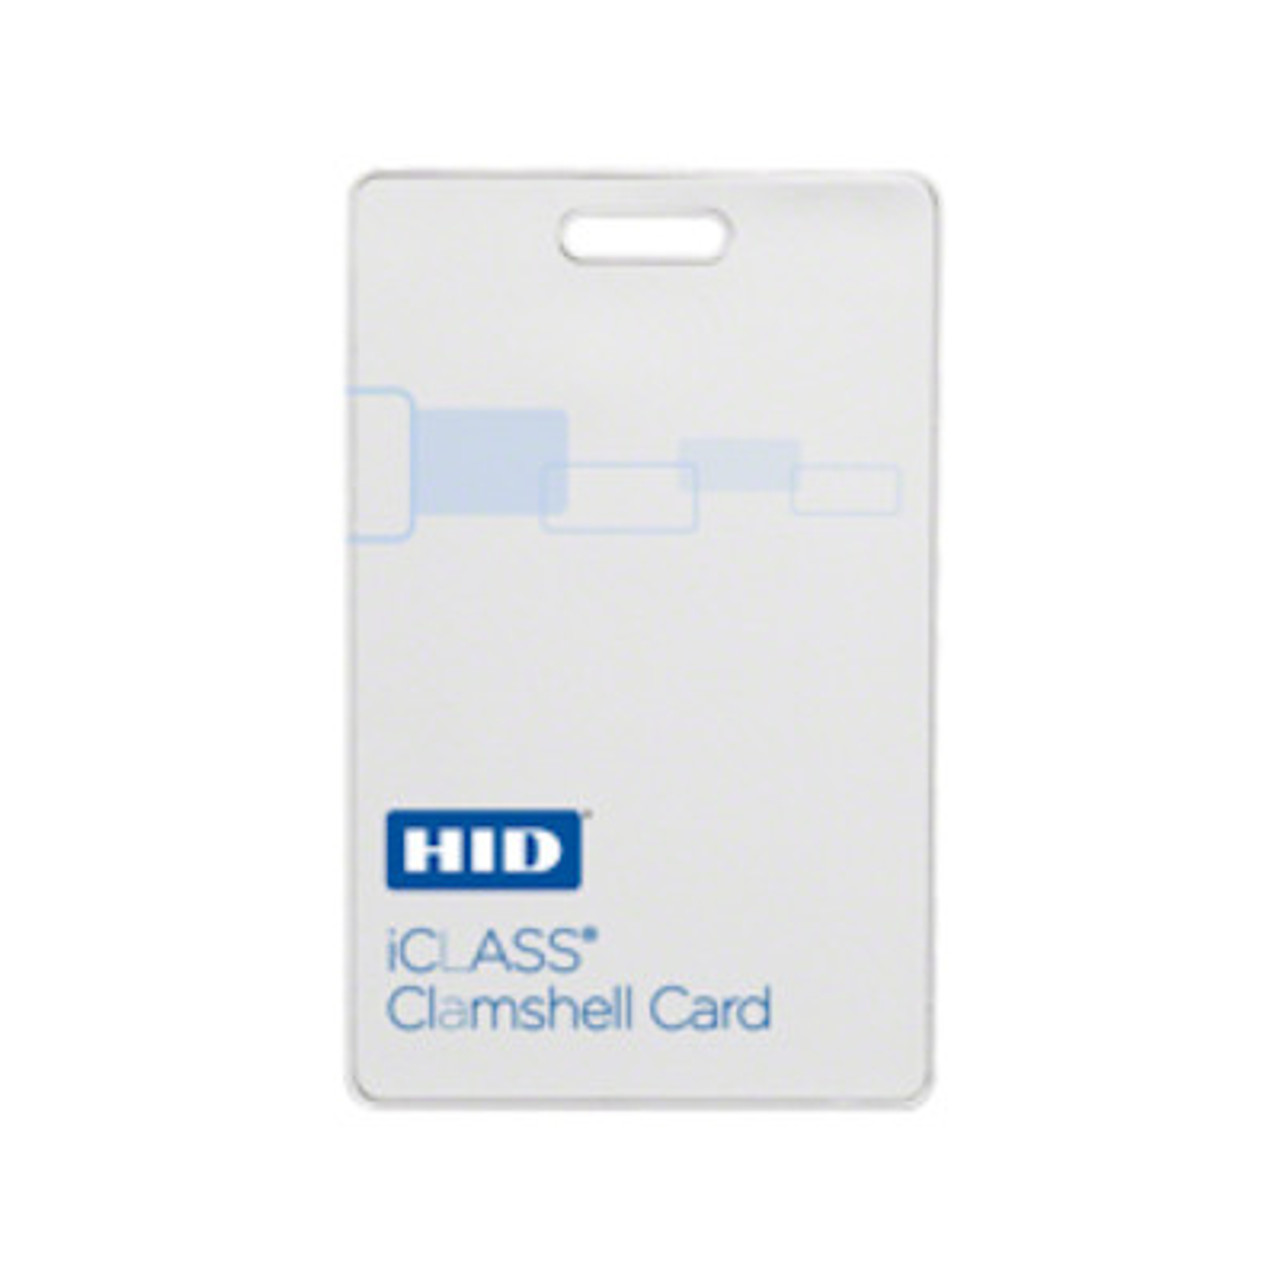 iCLASS CP400 Card Programmer Datasheet - HID Global